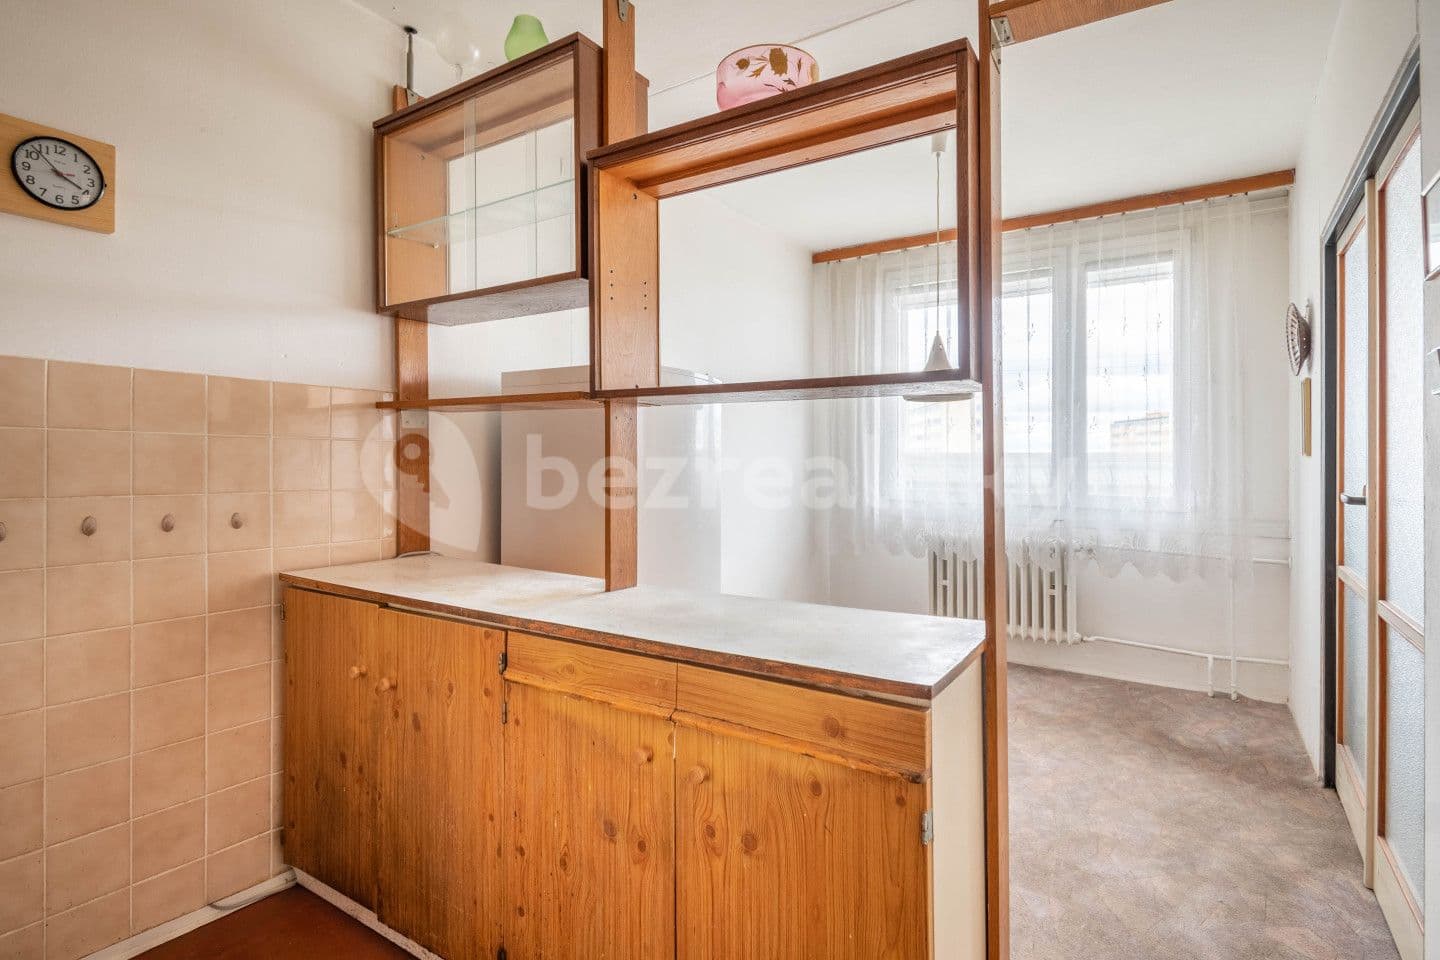 3 bedroom flat for sale, 68 m², Novodvorská, Prague, Prague